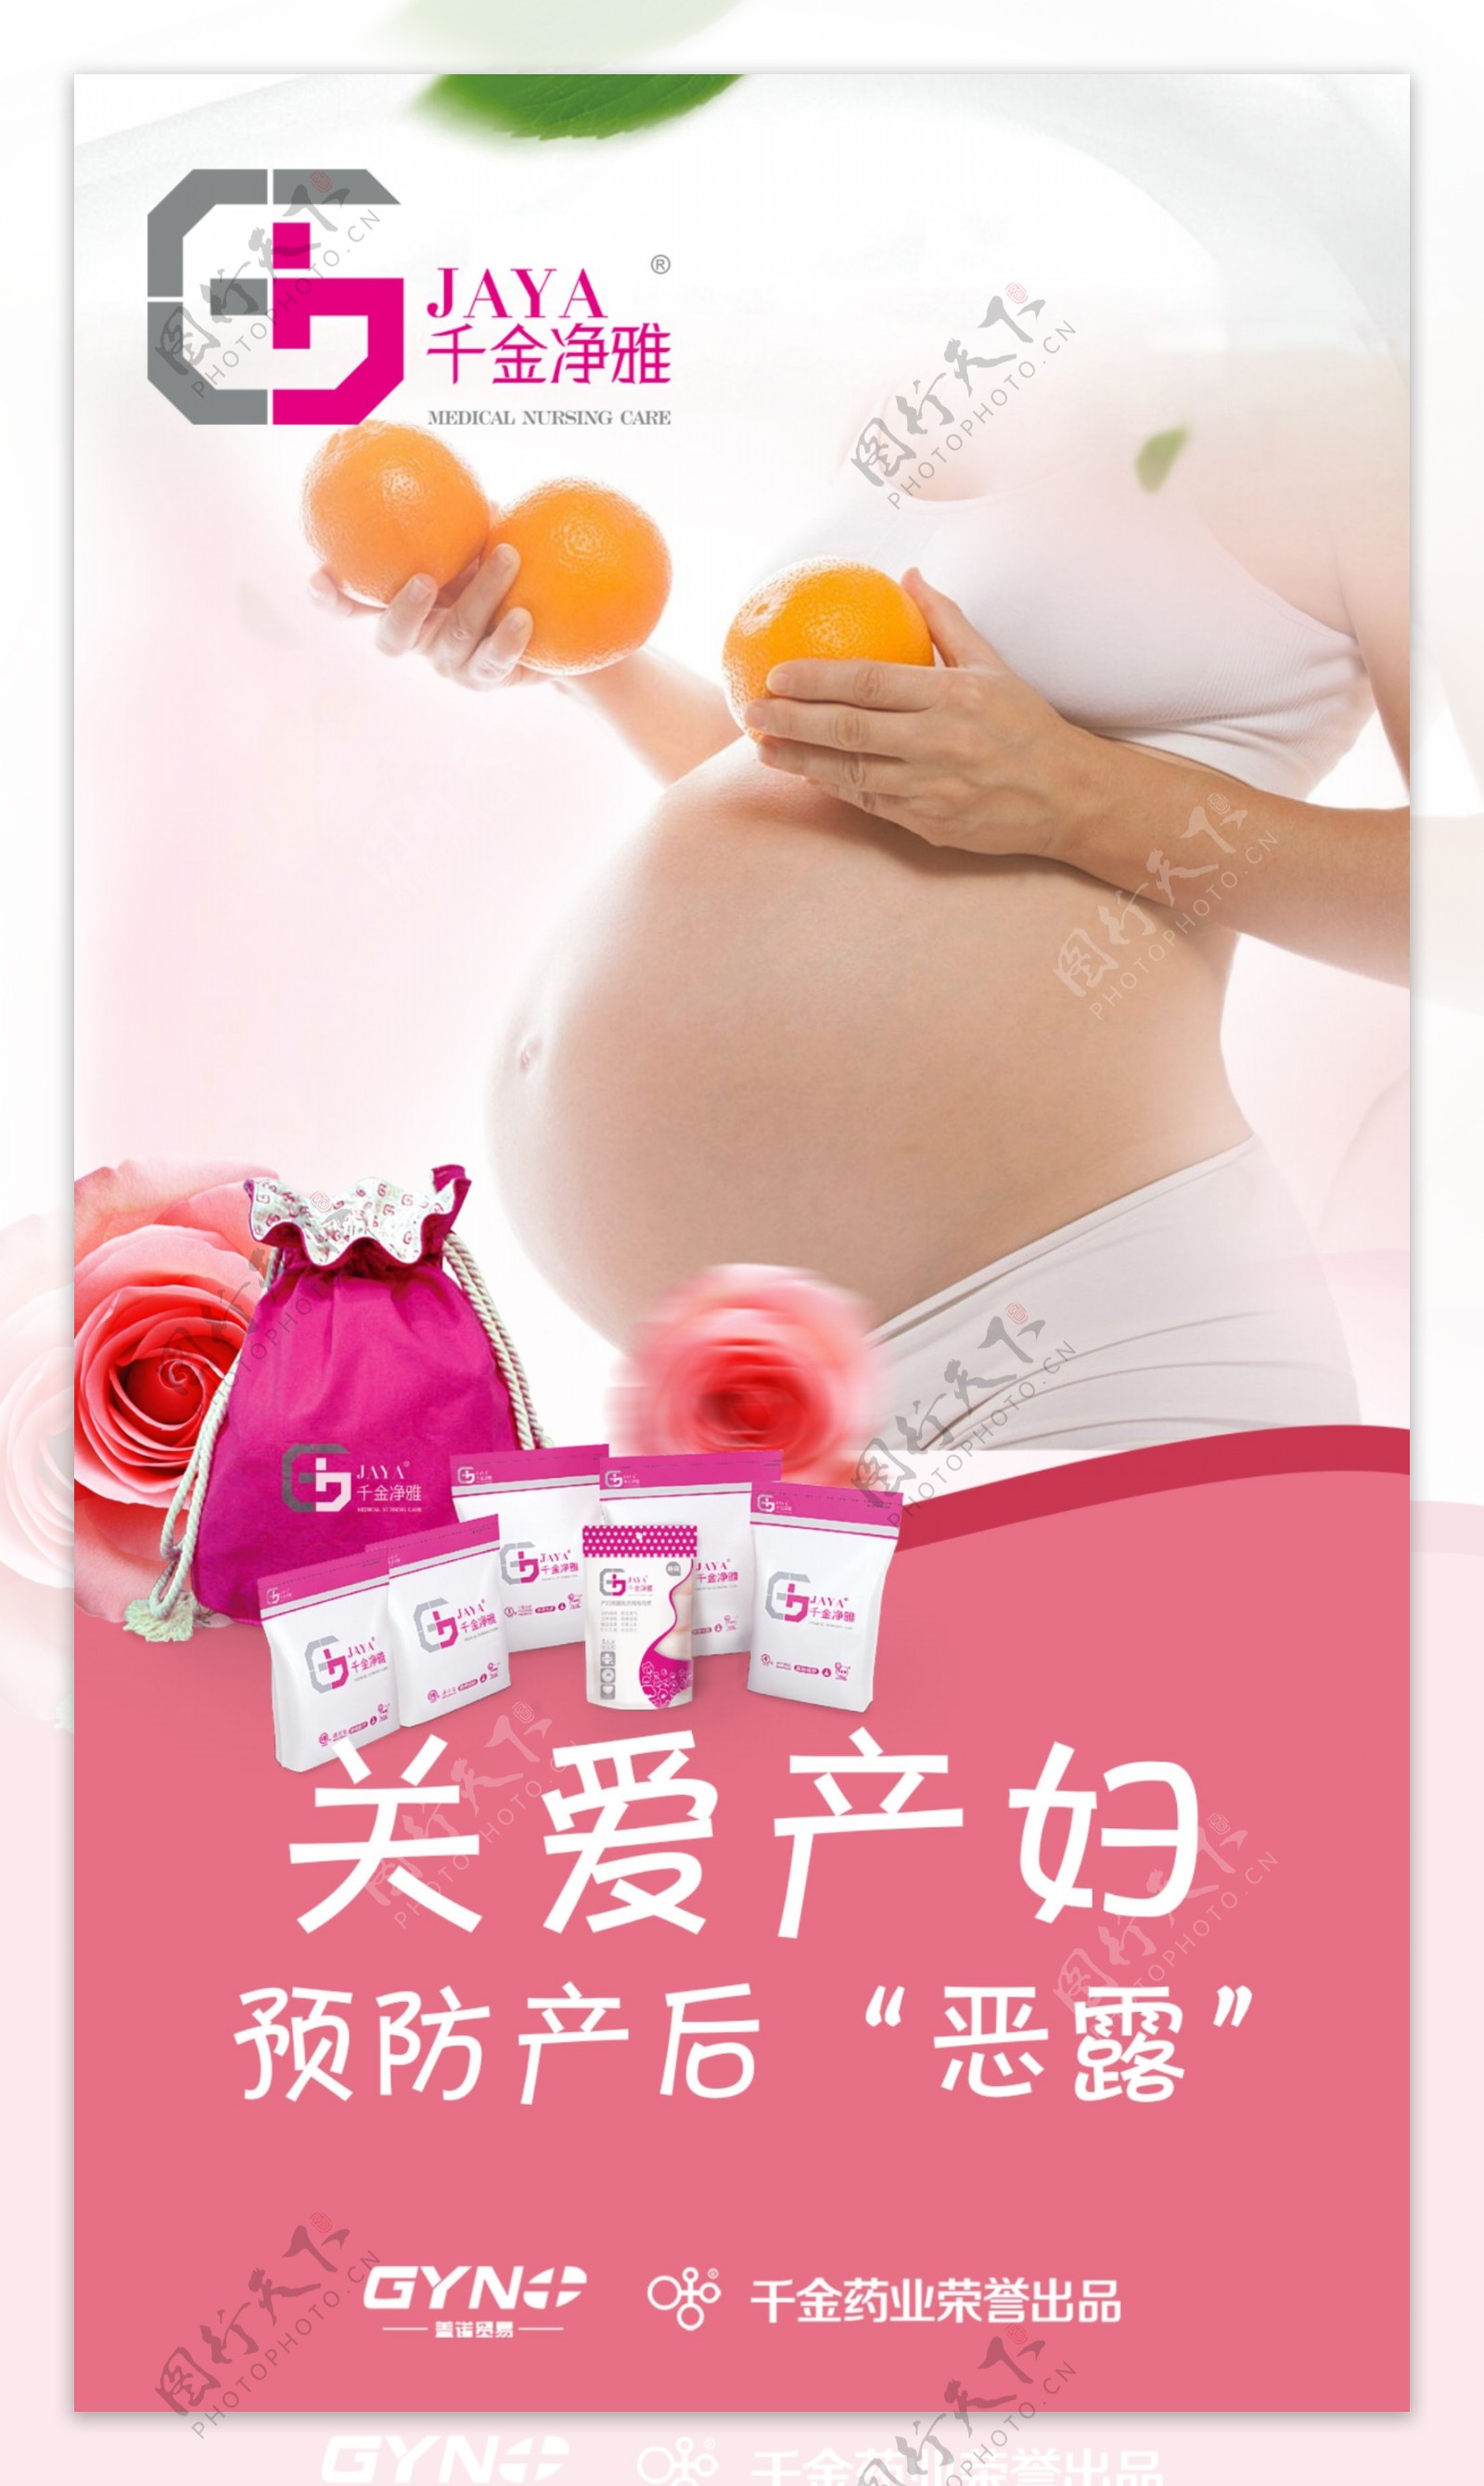 孕妇健康